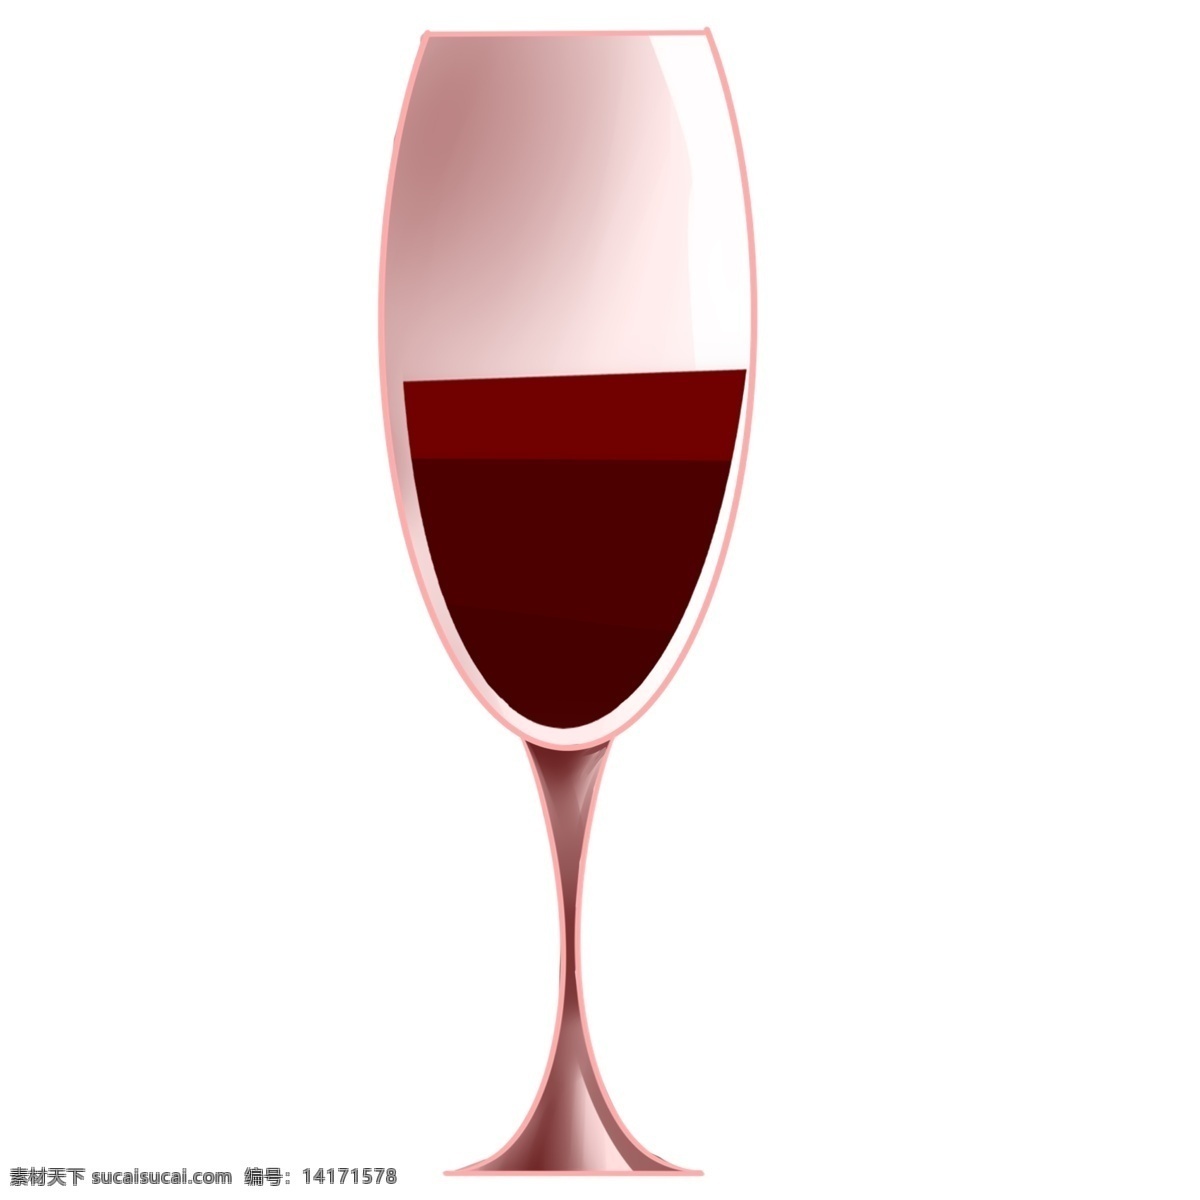 一杯 红酒 葡萄酒 插画 红酒葡萄酒 酒瓶插画 高脚杯插画 倒满酒的杯子 酒水饮品 高档红酒 一杯红酒